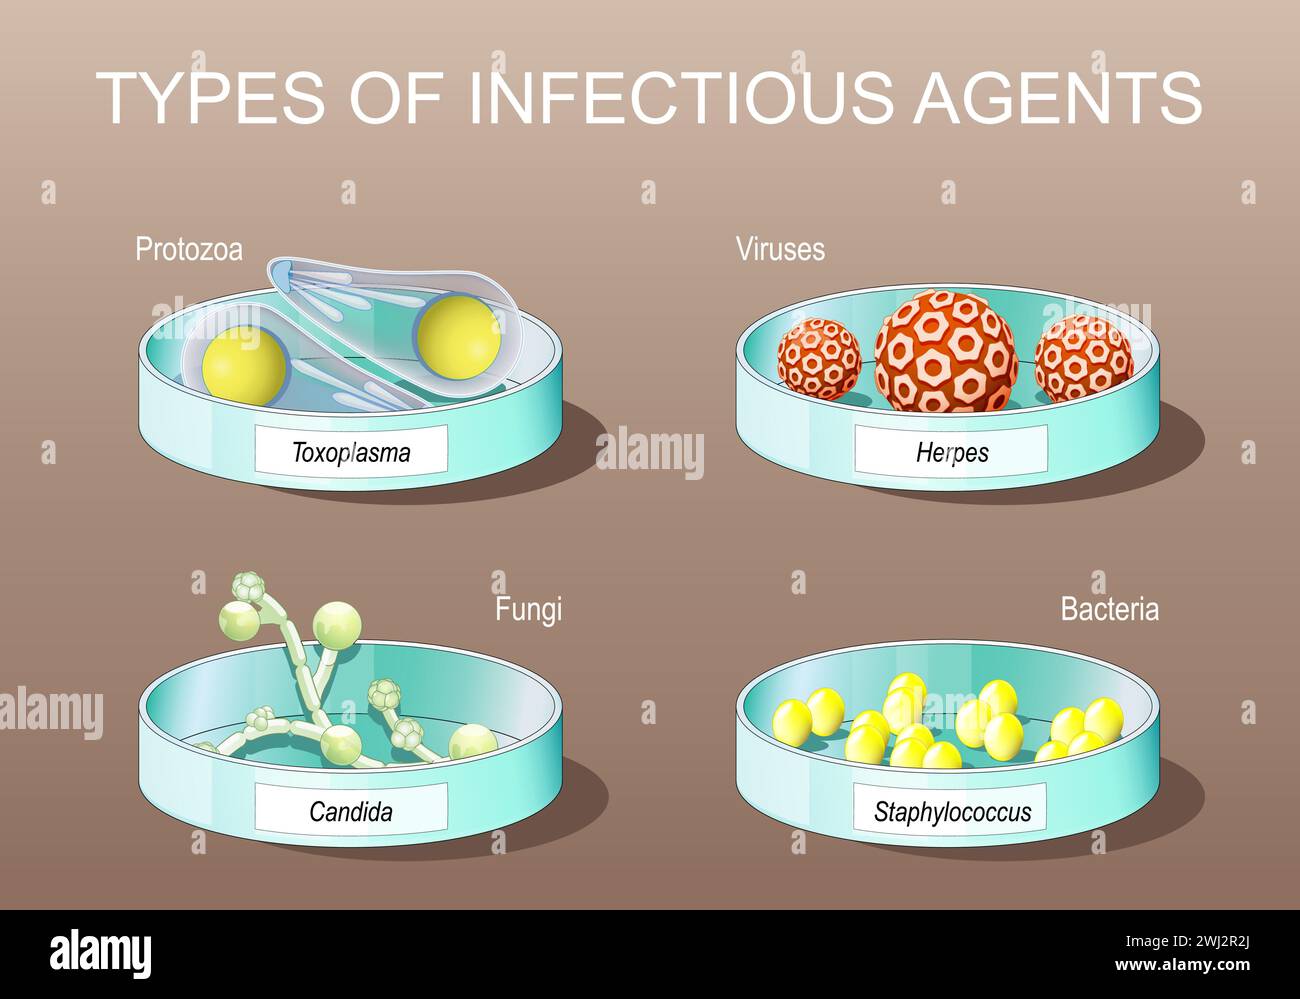 Types d'agents infectieux. pathogènes. Protozoaire parasitaire. Virus, bactéries, champignons et organismes unicellulaires. Boîtes de Pétri avec Candida albicans, elle Illustration de Vecteur